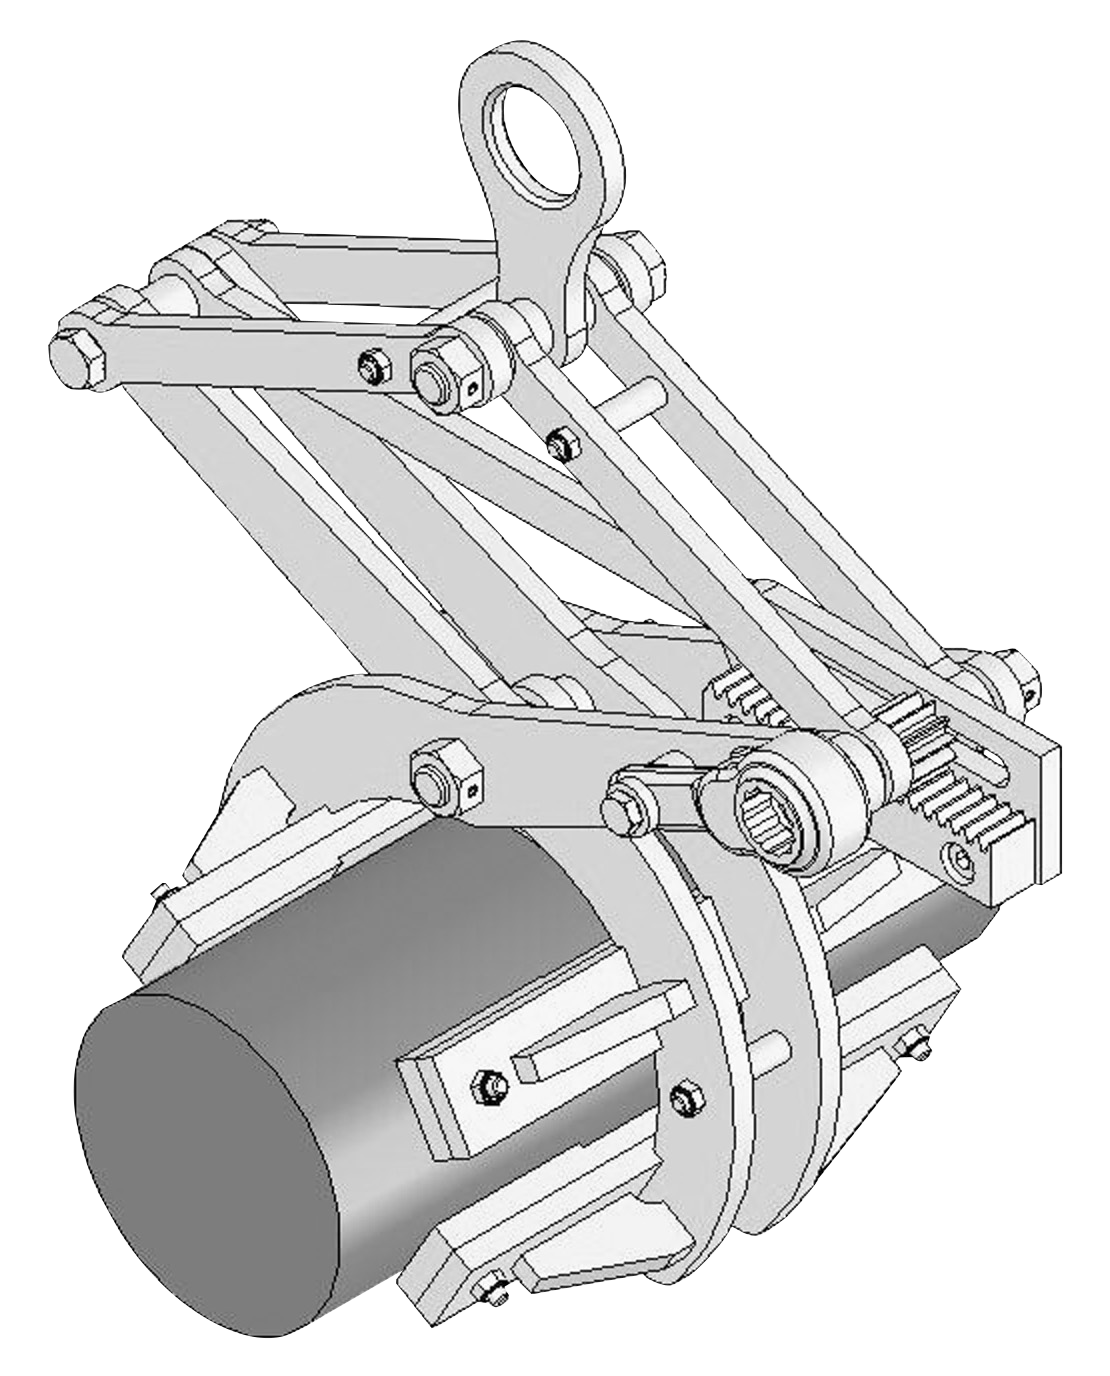 ネツレン RW-S型 レール吊りクランプ 使用荷重1TON